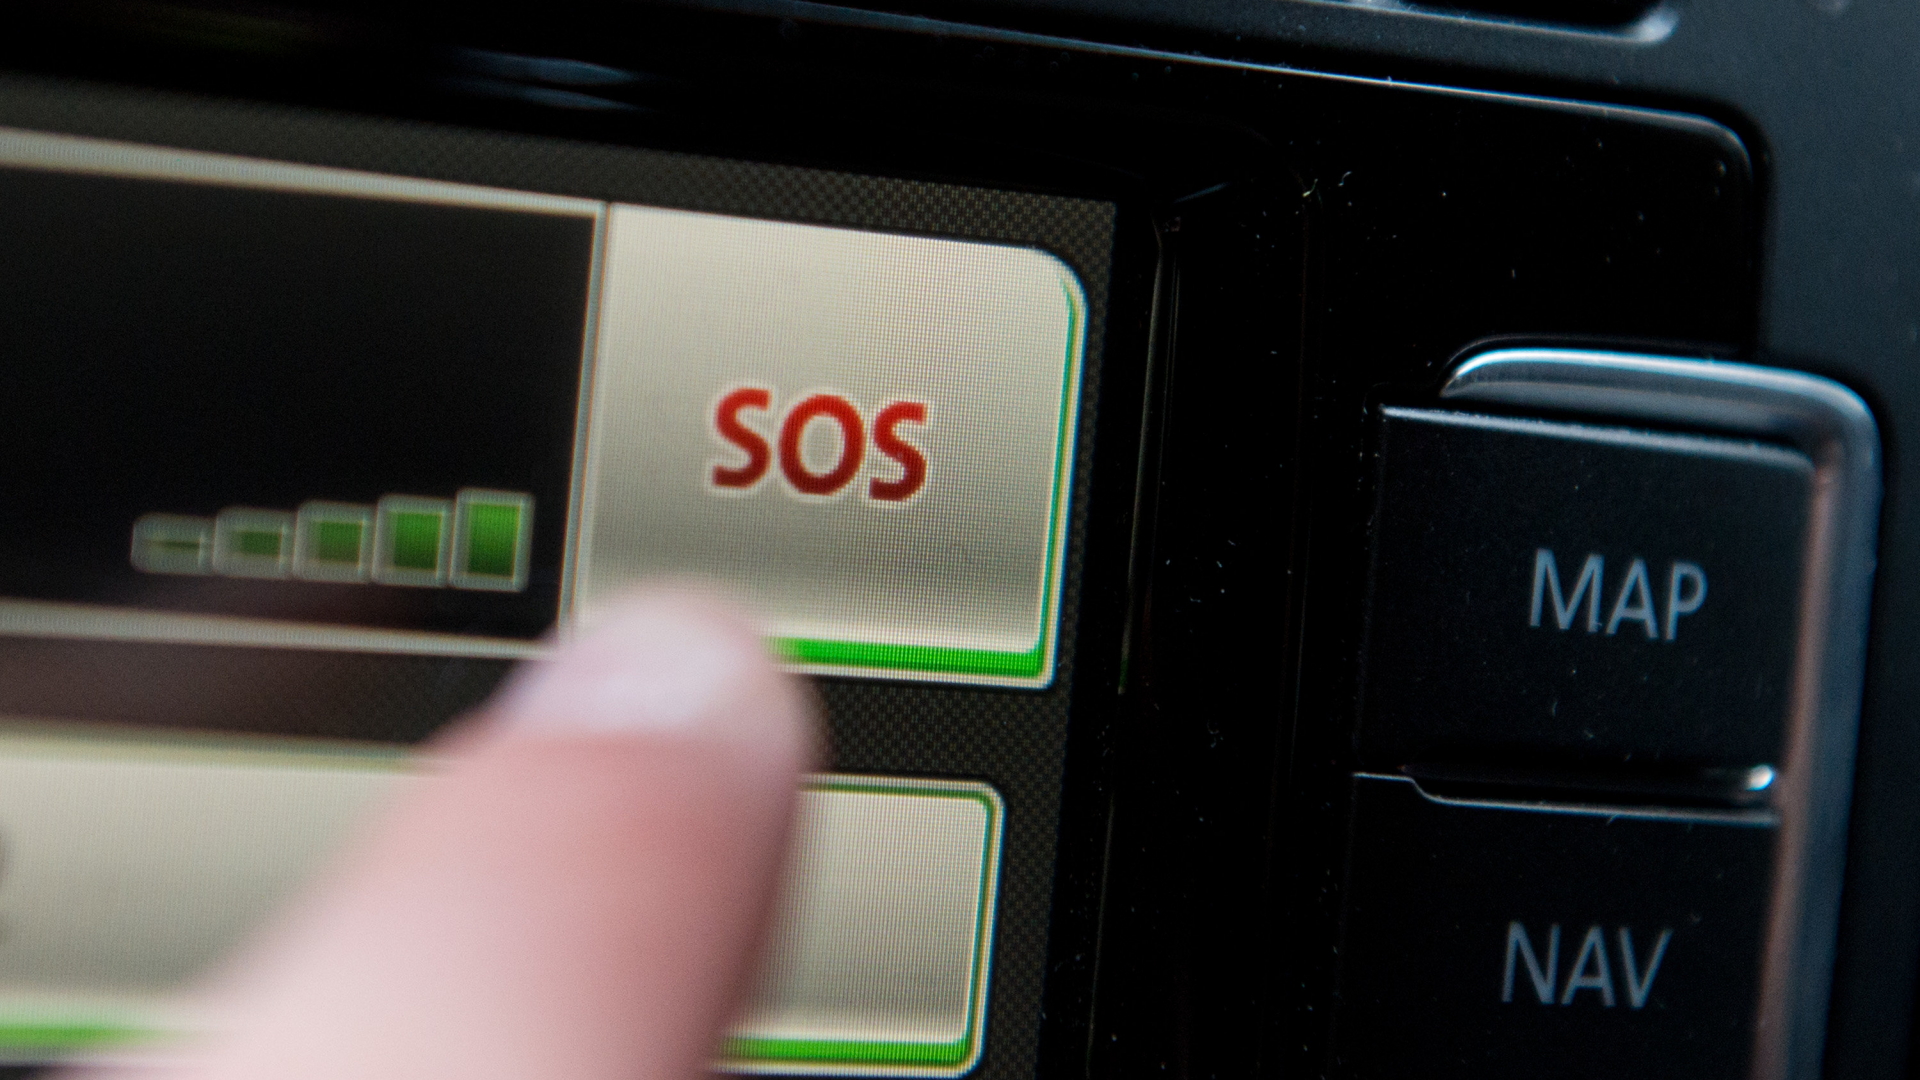 Ein Schriftzug "SOS" ist auf dem Display eines Bordcomputers mit Touchpad eines Volkswagen Fahrzeuges zu sehen.